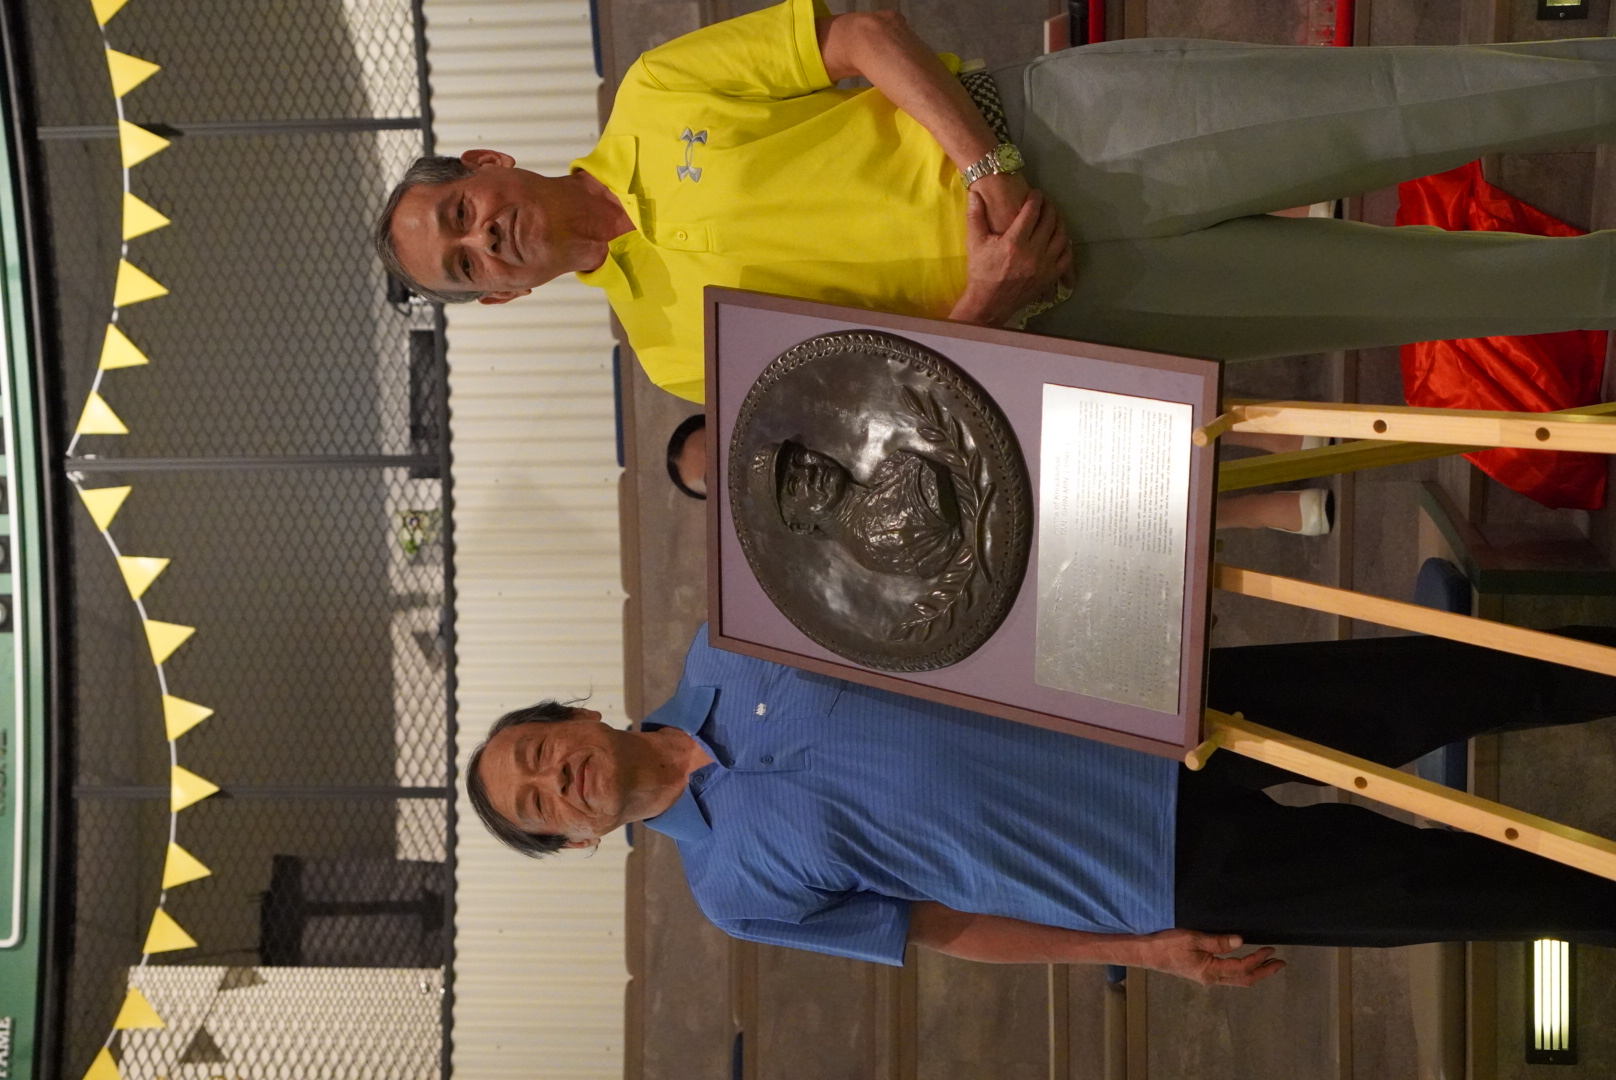 譚信民教練右和哥哥譚信義在銅雕前合影。台灣棒球名人堂協會提供